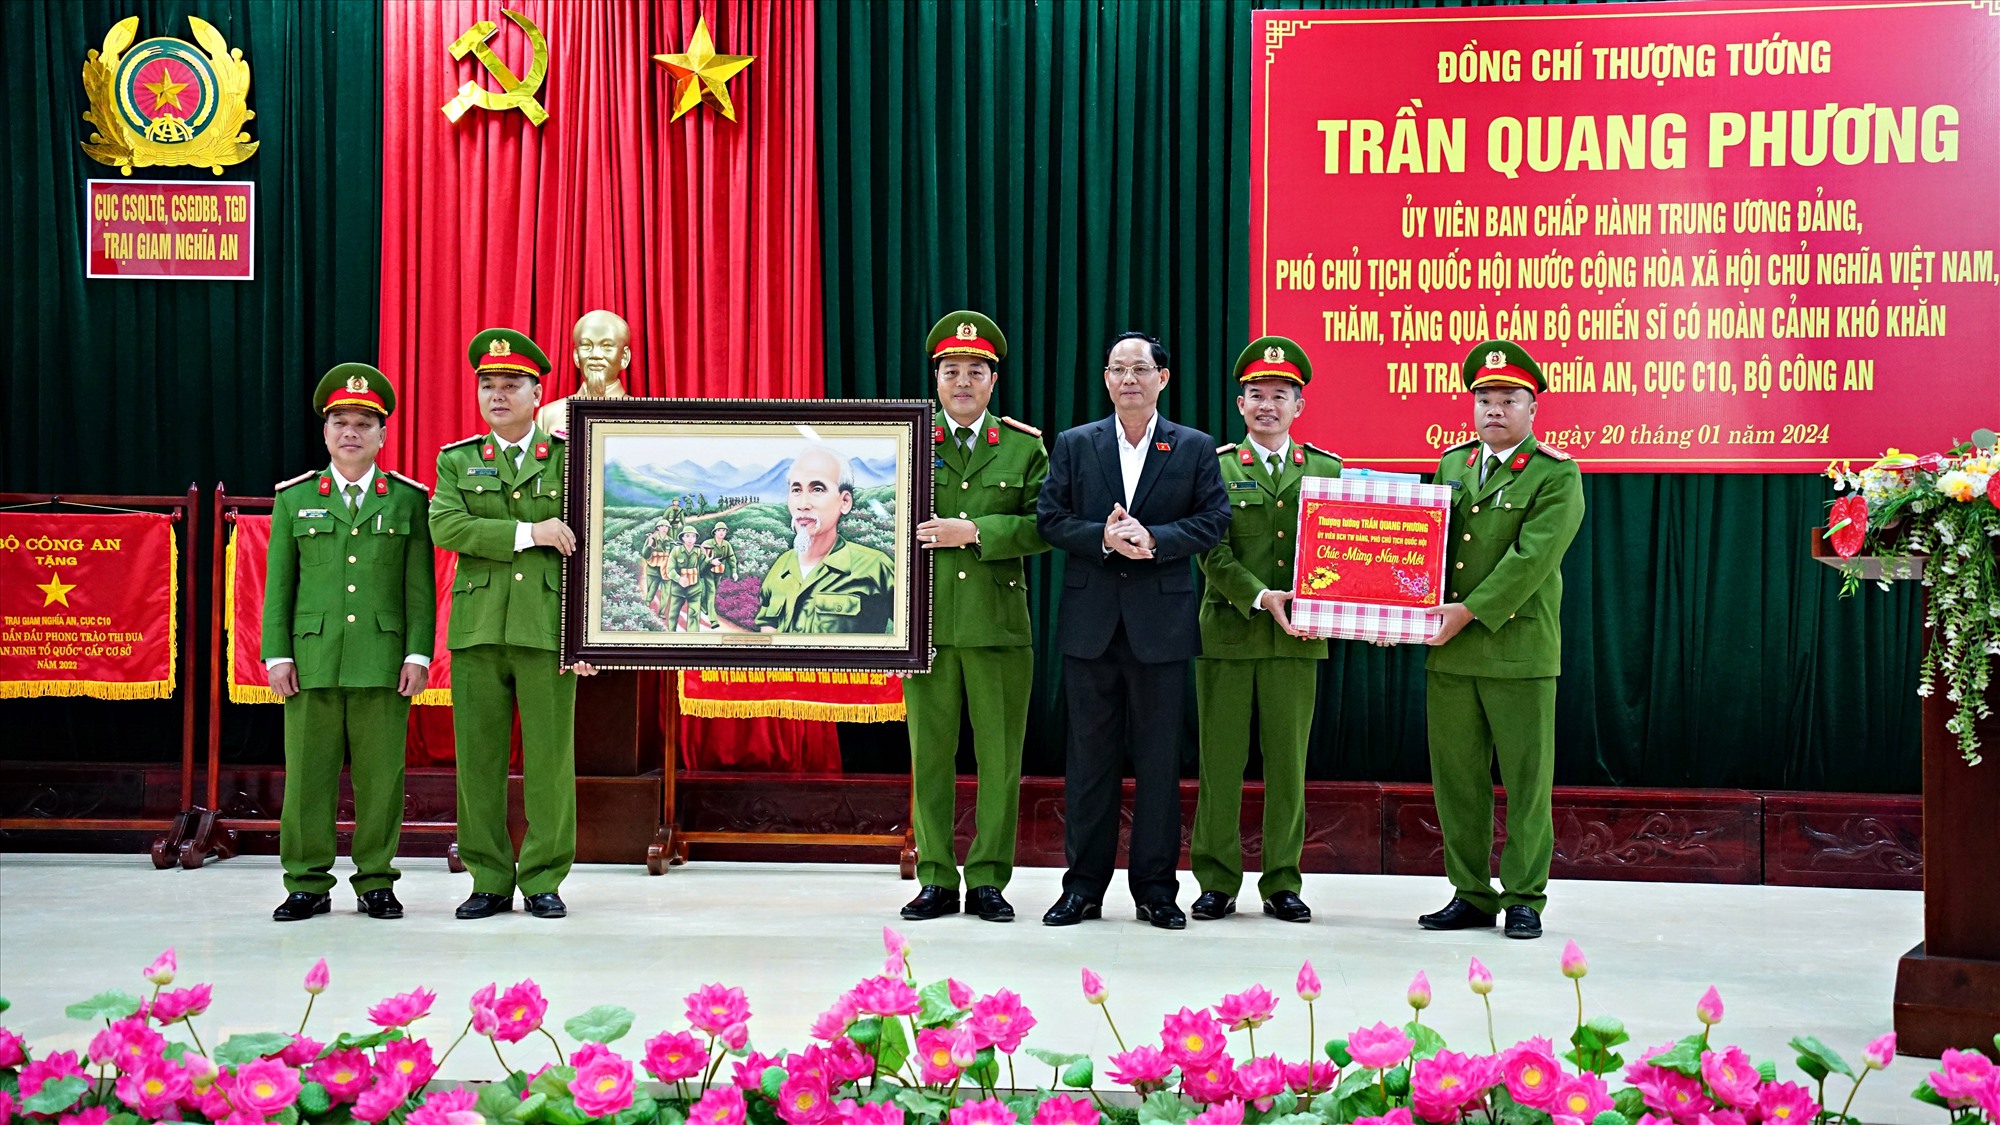 Phó Chủ tịch Quốc hội Trần Quang Phương tặng quà cho Trại giam Nghĩa An - Ảnh: L.A